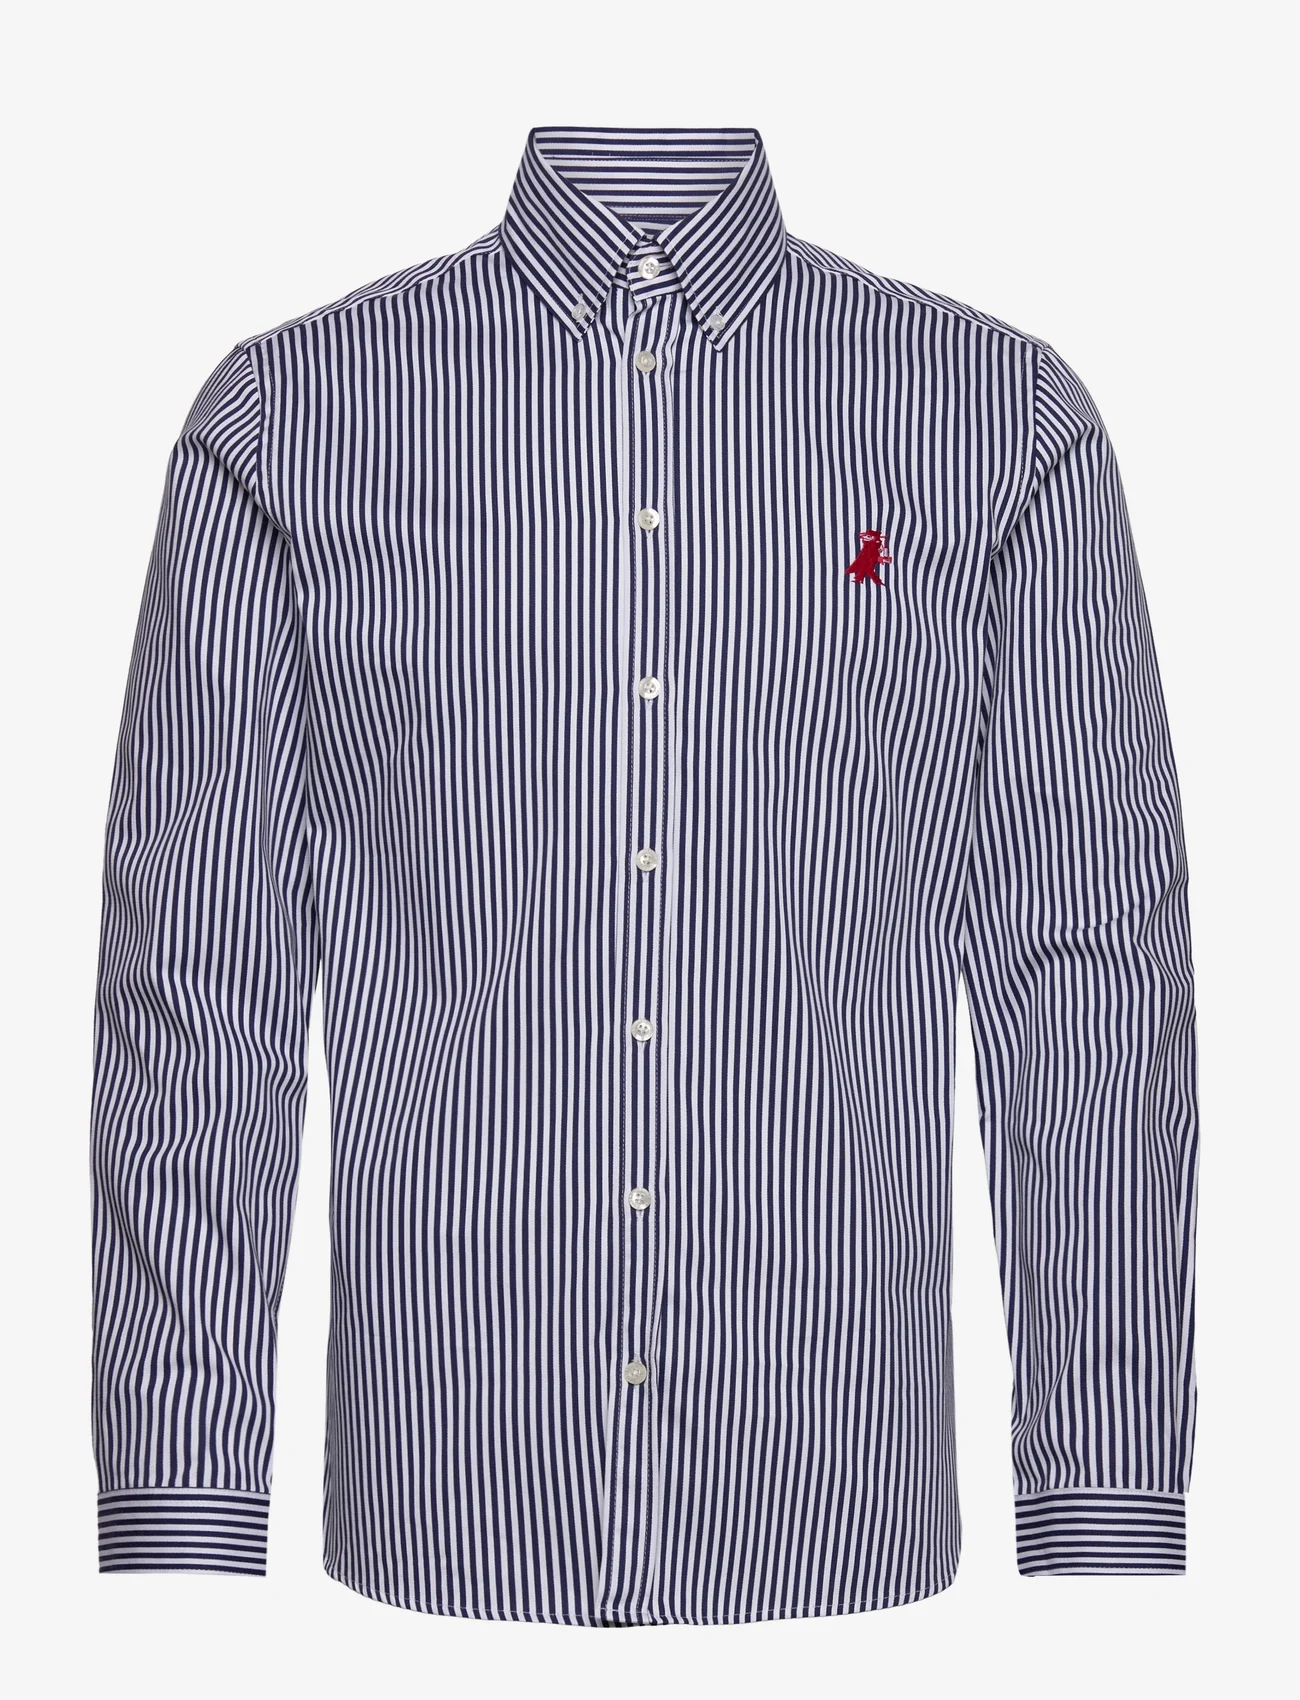 Libertine-Libertine - Voleur Shirt - business-hemden - white & navy stripe - 0